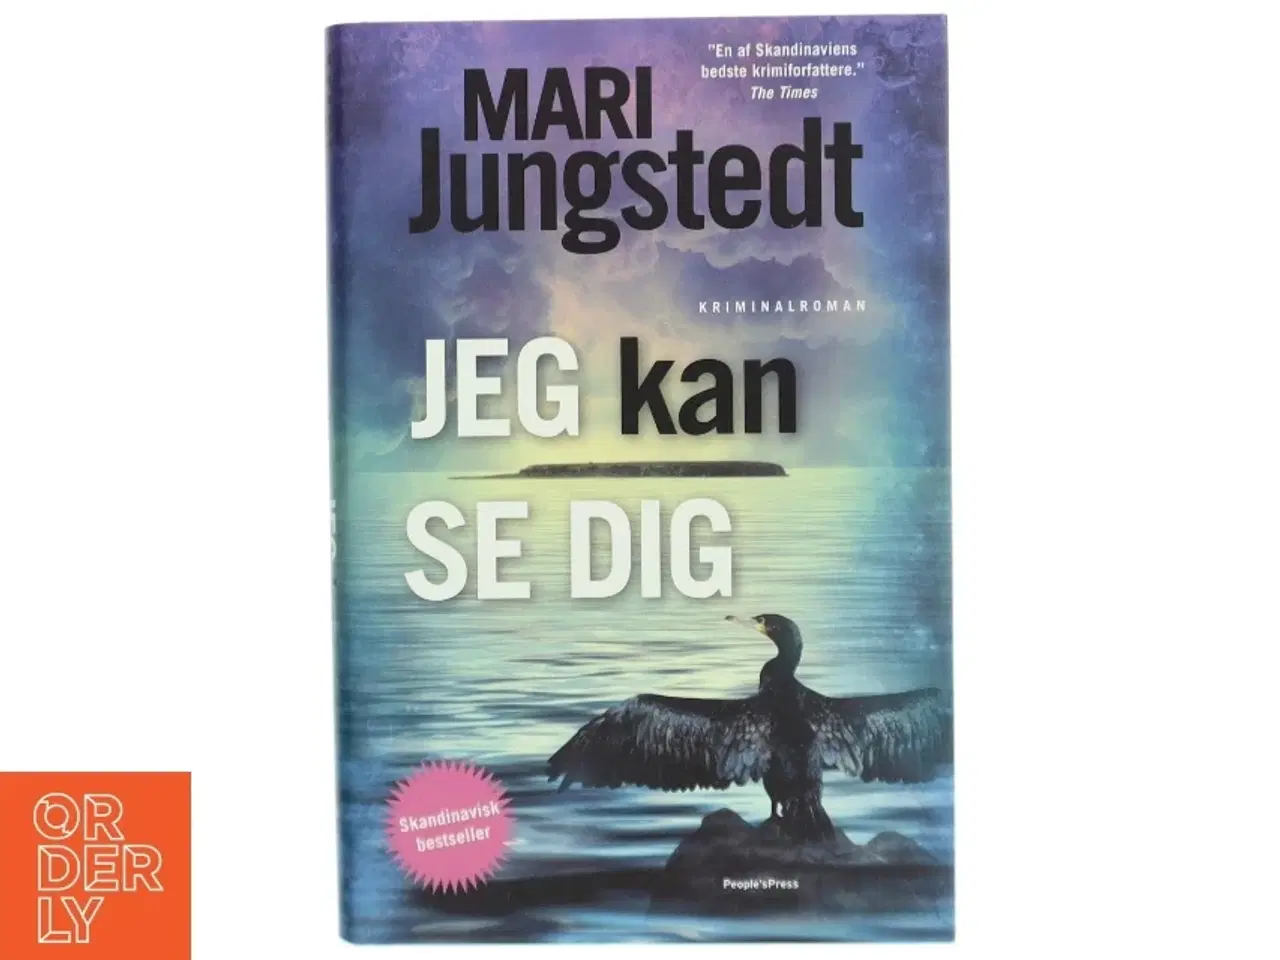 Billede 1 - 'Jeg kan se dig: kriminalroman' af Mari Jungstedt (bog)